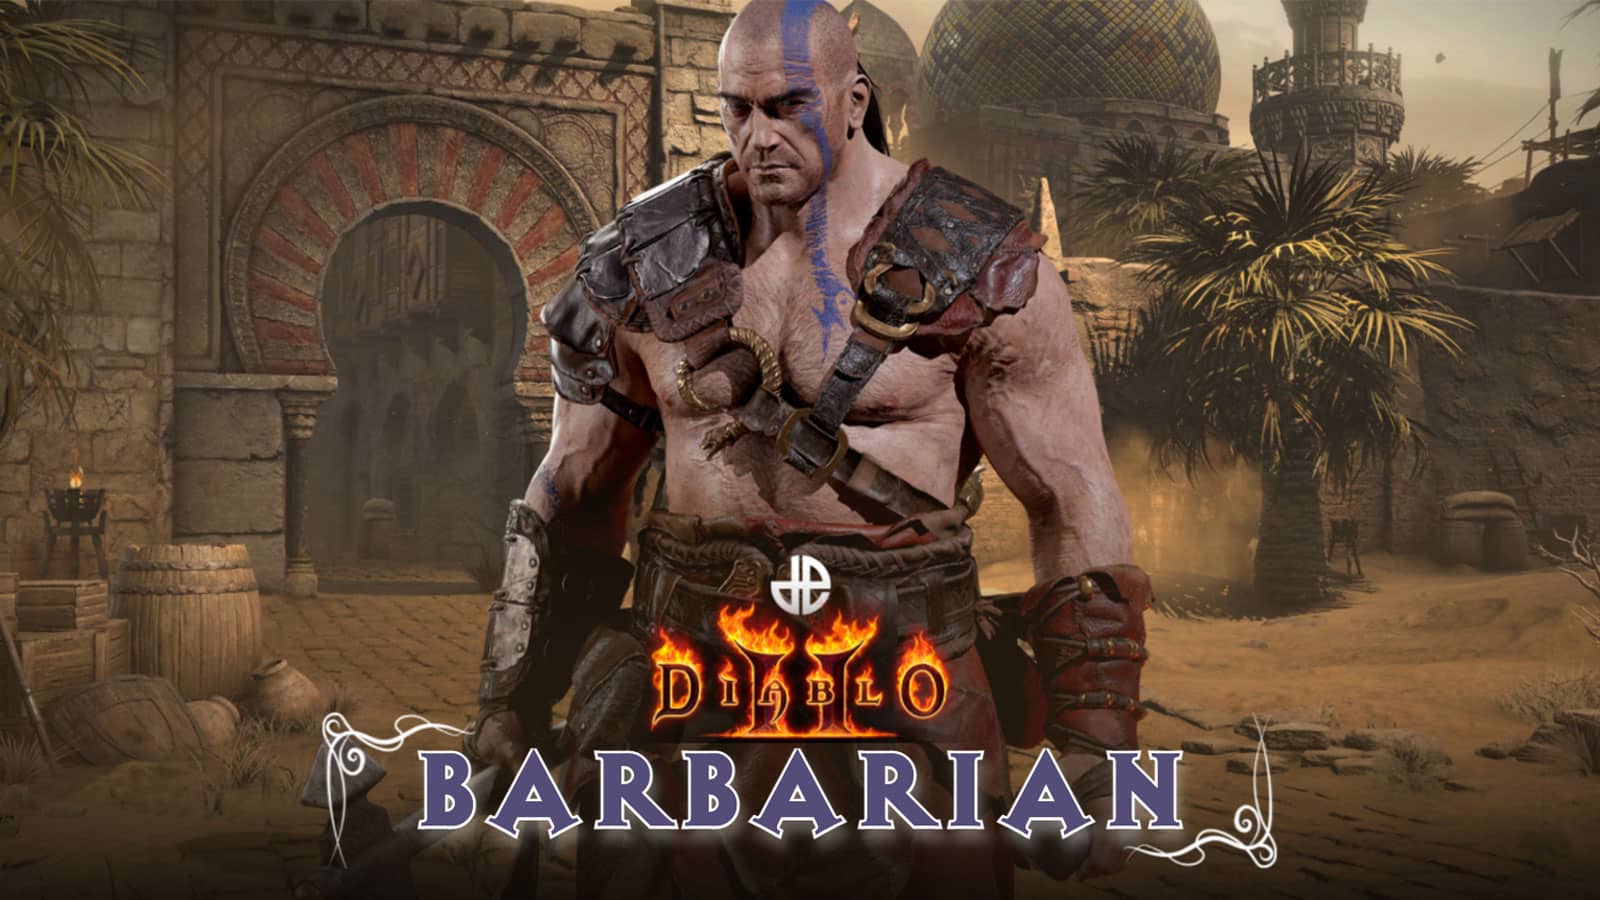 Barbarian Diablo 2 builds